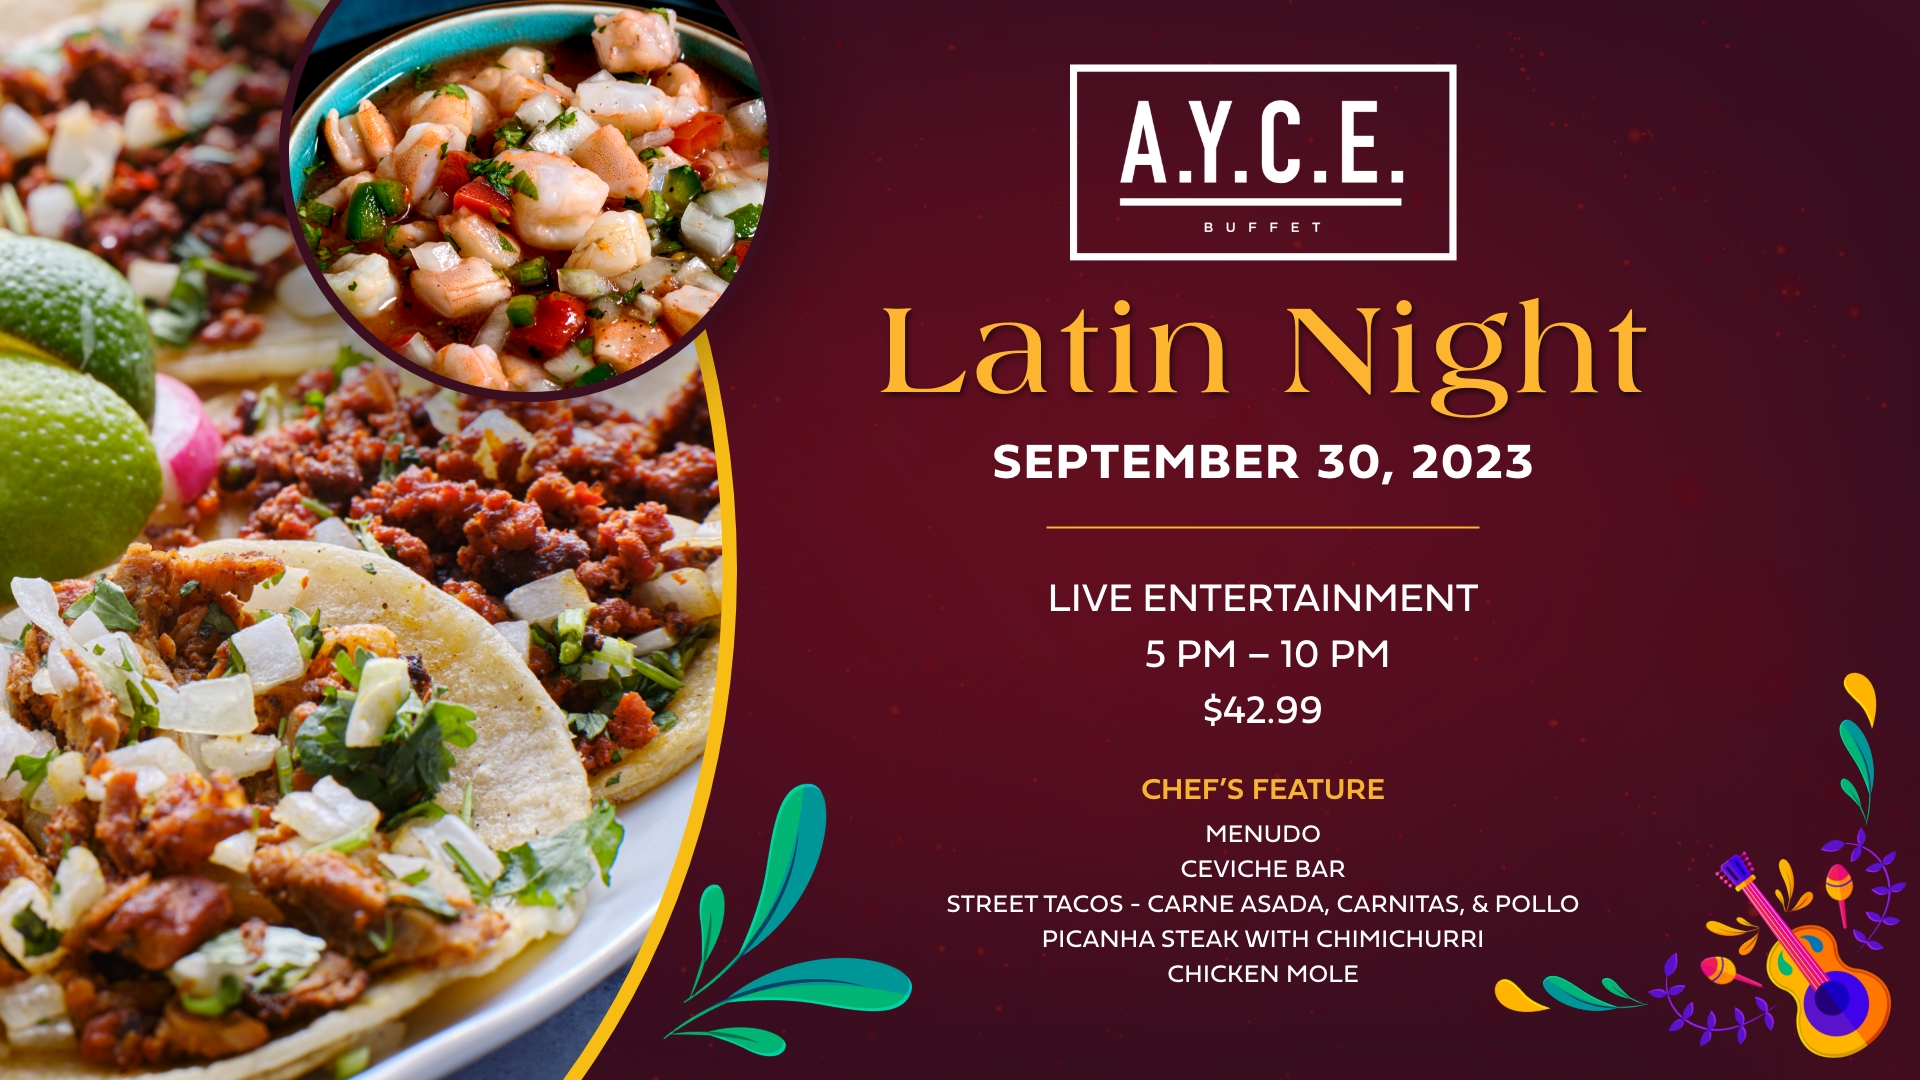 AYCE Latin Night promotional image